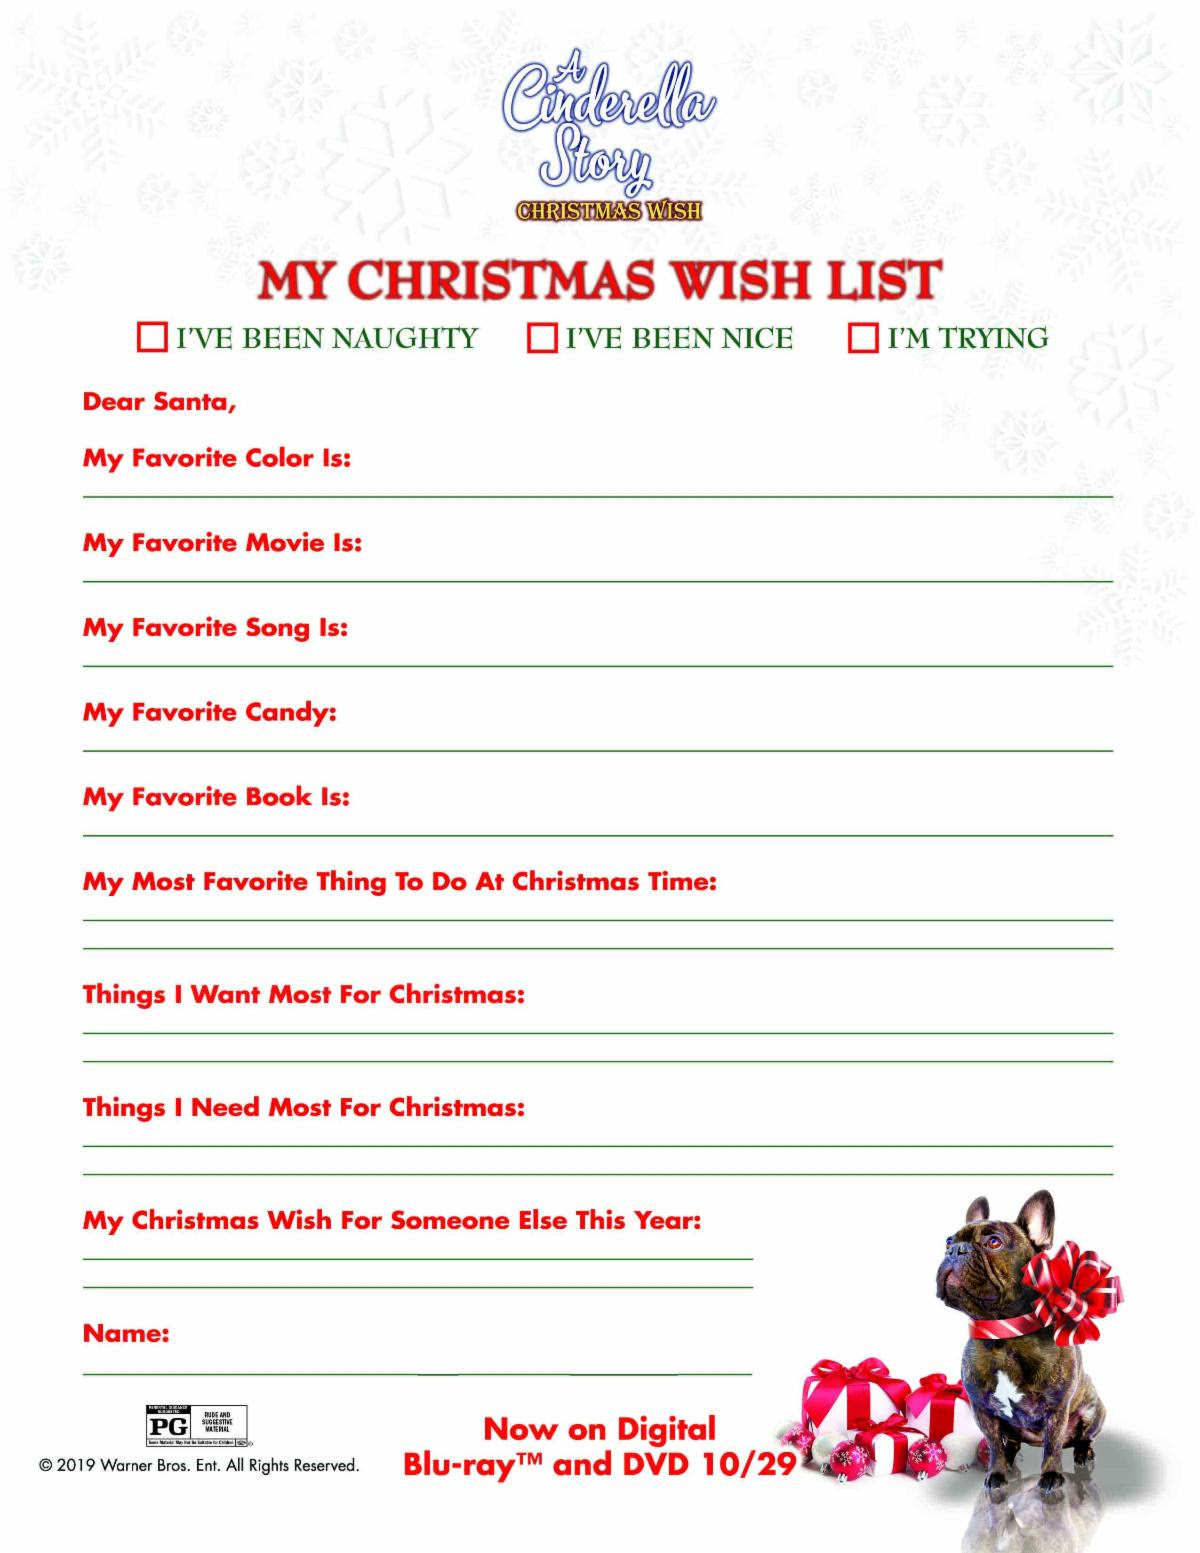 a-cinderella-story-christmas-wish-downloadable-christmas-wish-list